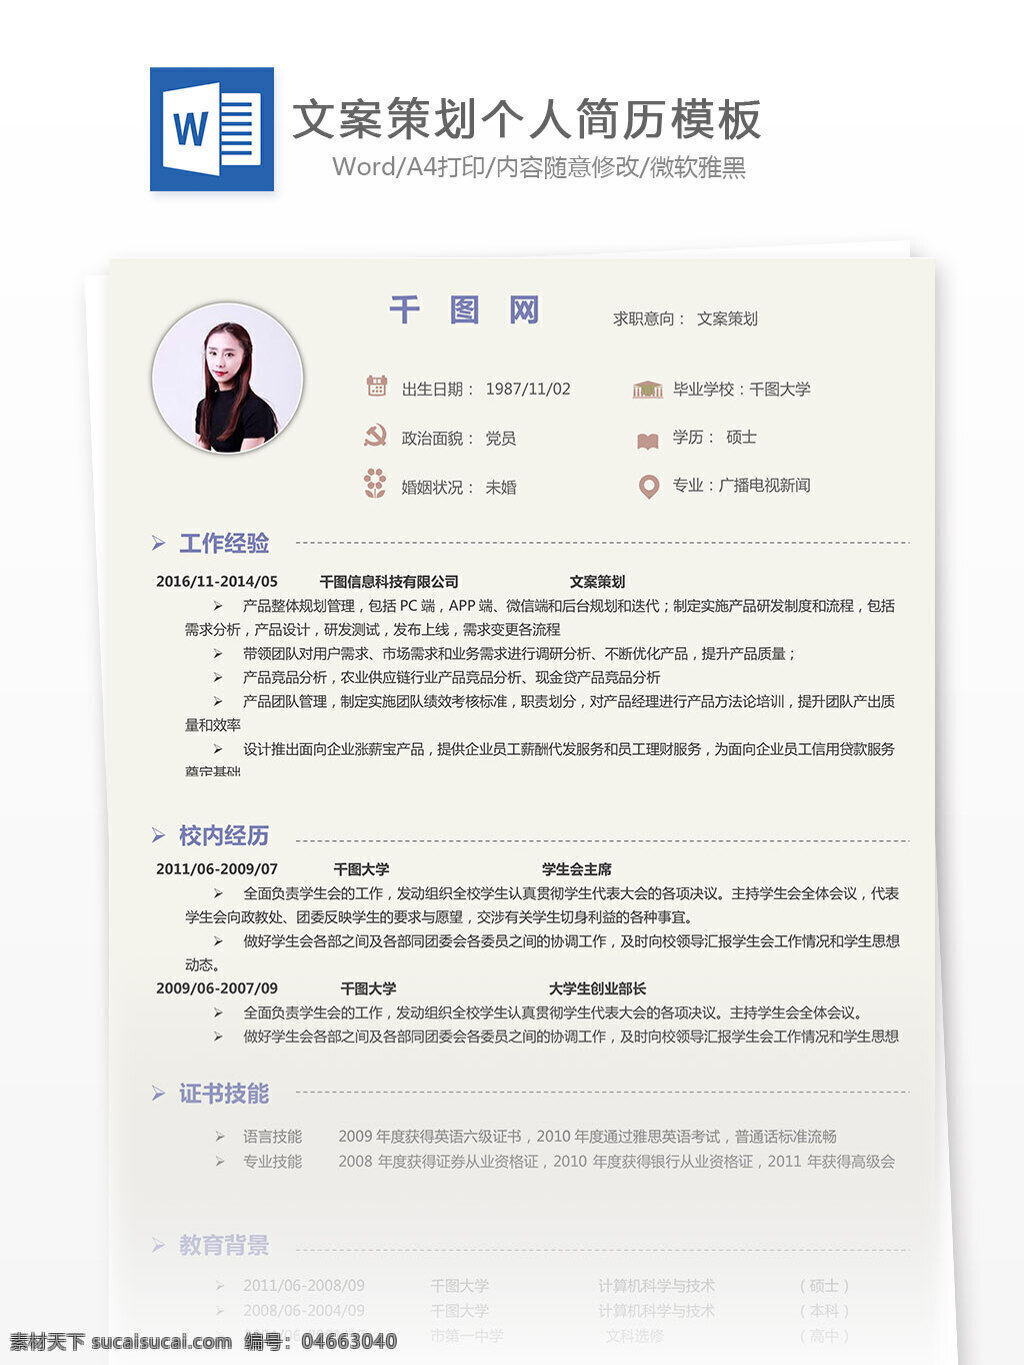 陈 俊 源 文案 策划 简历 表格 个人简历 简约 欧美 简历模板 个人简历模板 文案策划 13年 影视